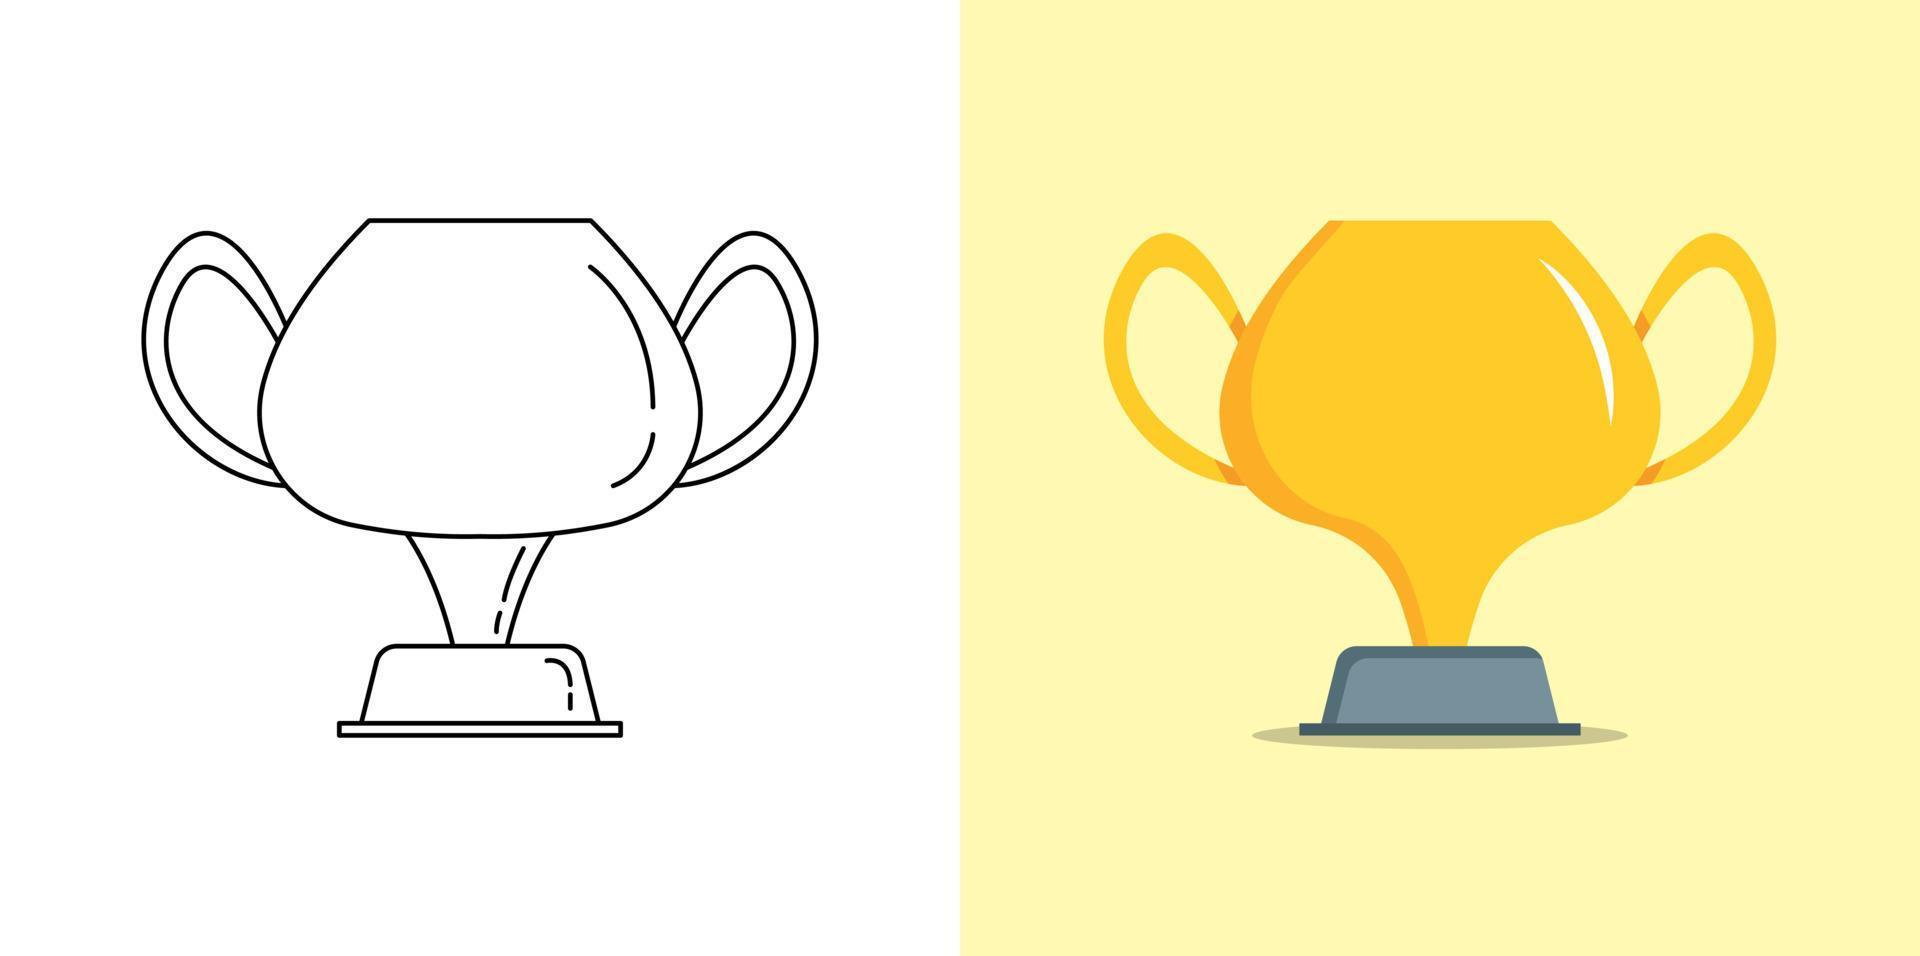 gouden trofee beker, sport trofee wedstrijd prijs in vlak en schets illustratie vector